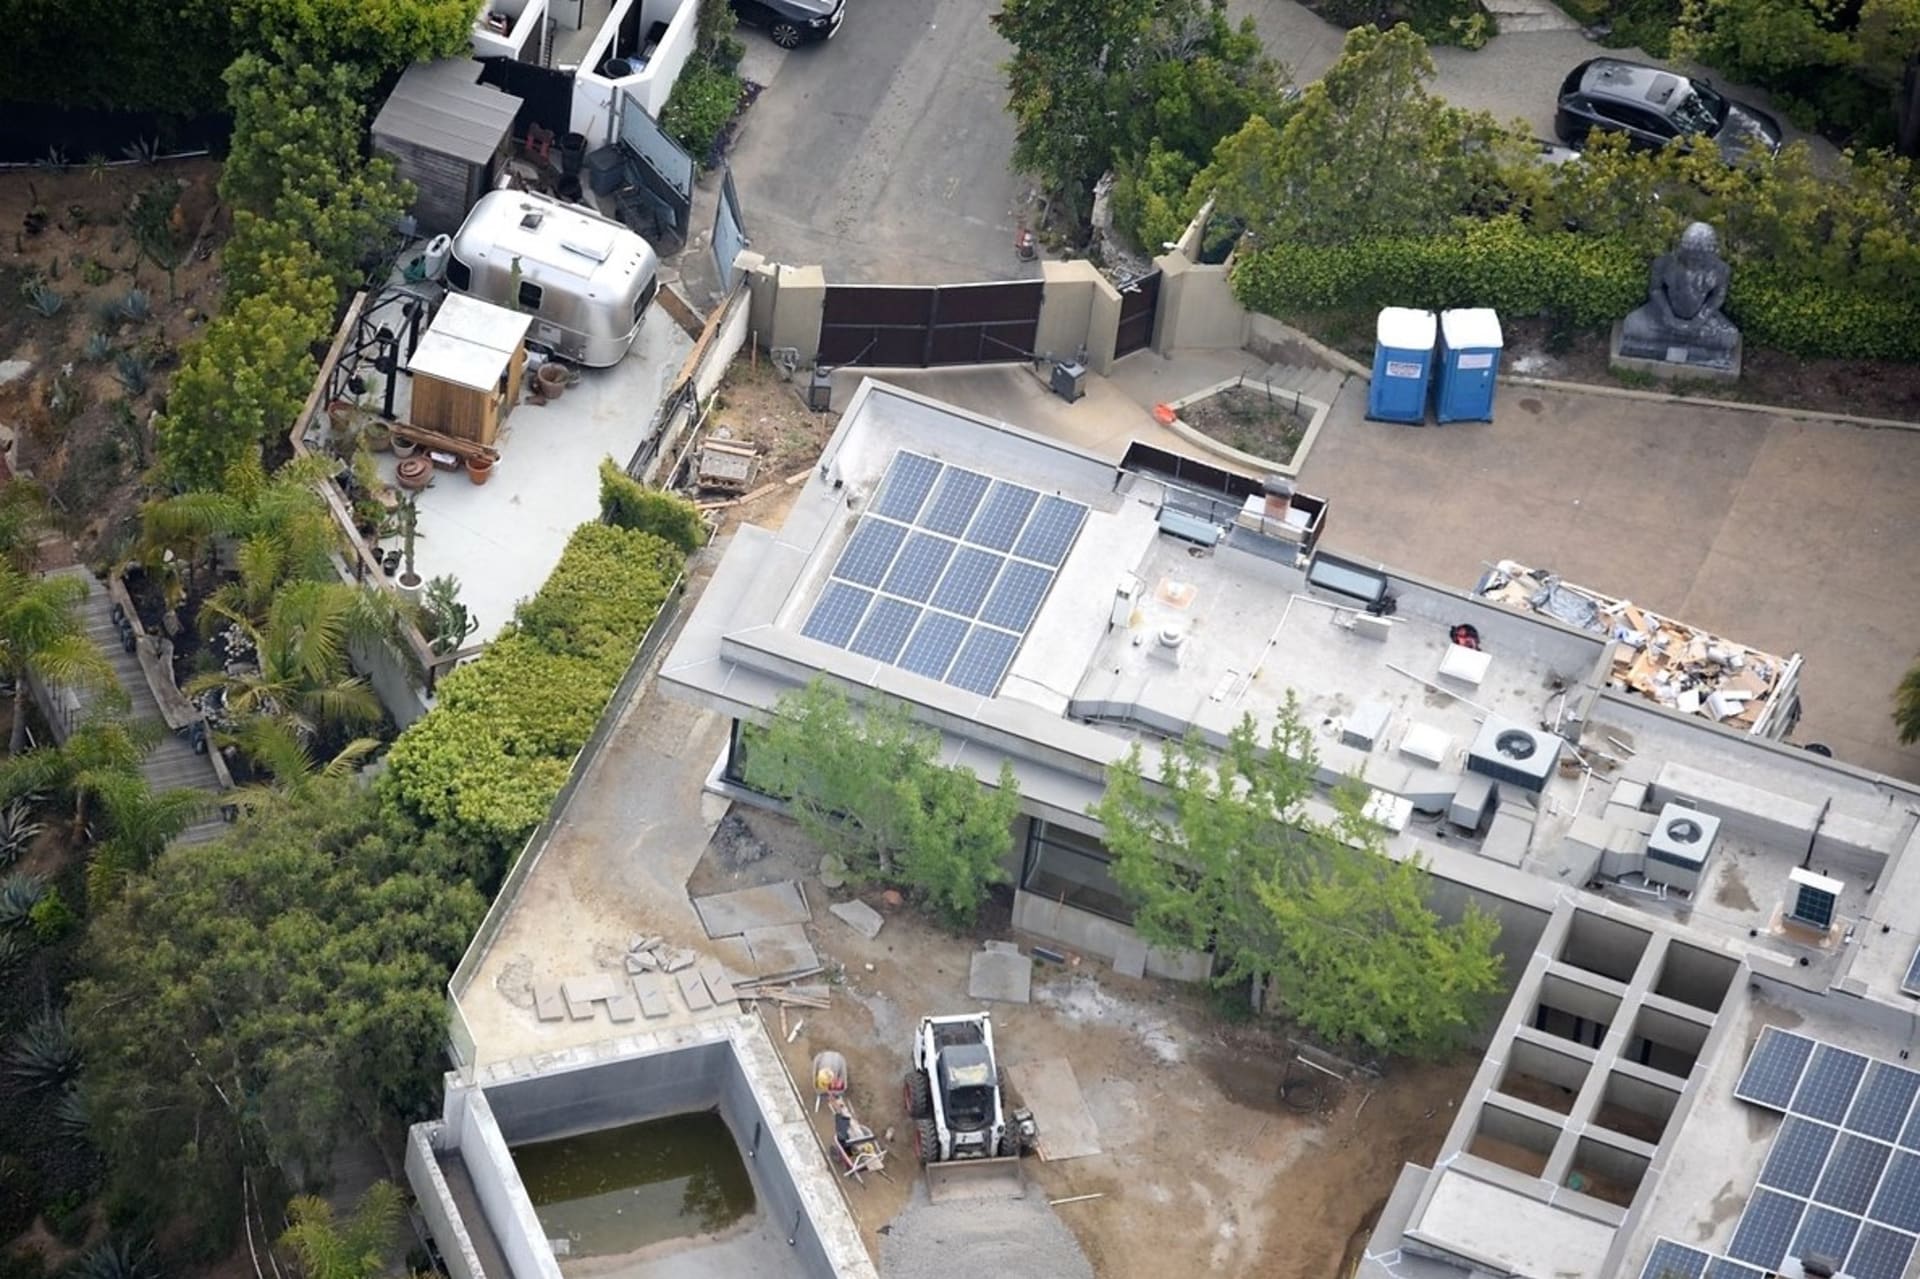 V komplexu Leonarda diCapria v Hollywood Hils probíhá čilý stavební ruch